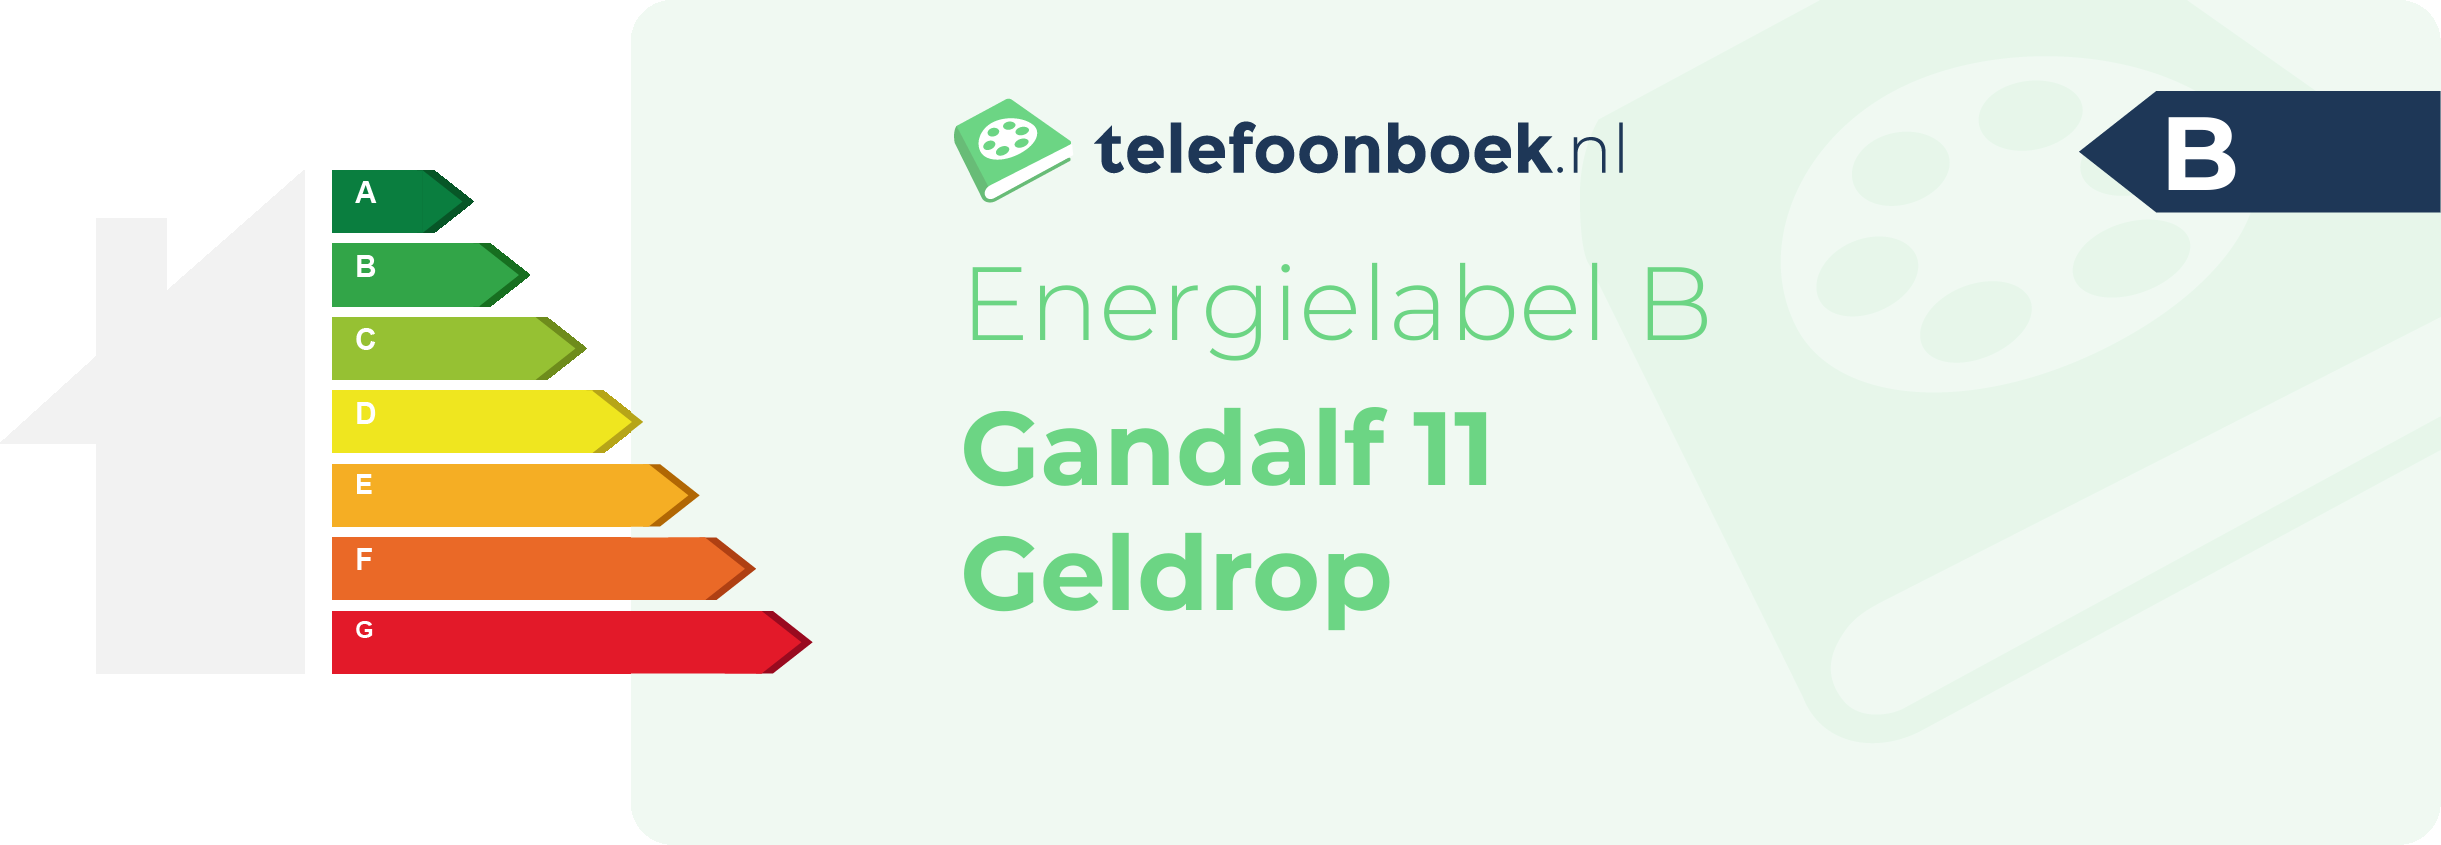 Energielabel Gandalf 11 Geldrop